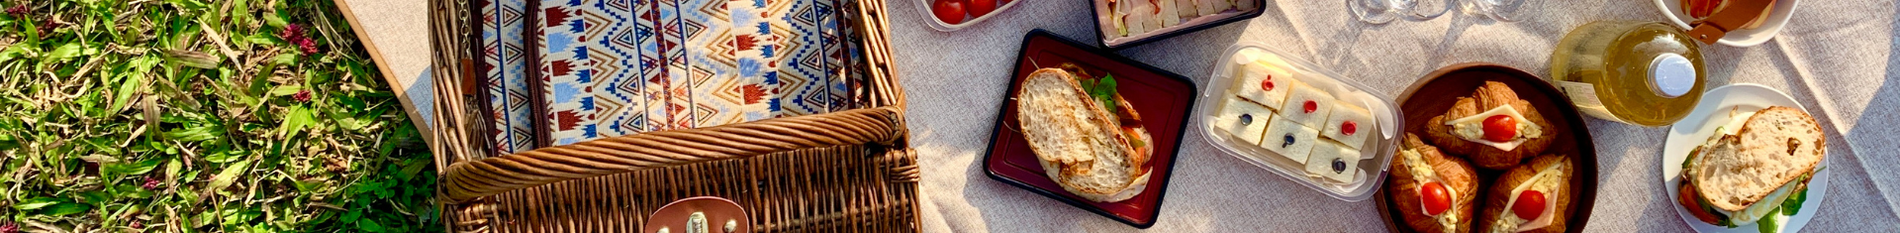 Blog-Banner-best-food-for-picnics